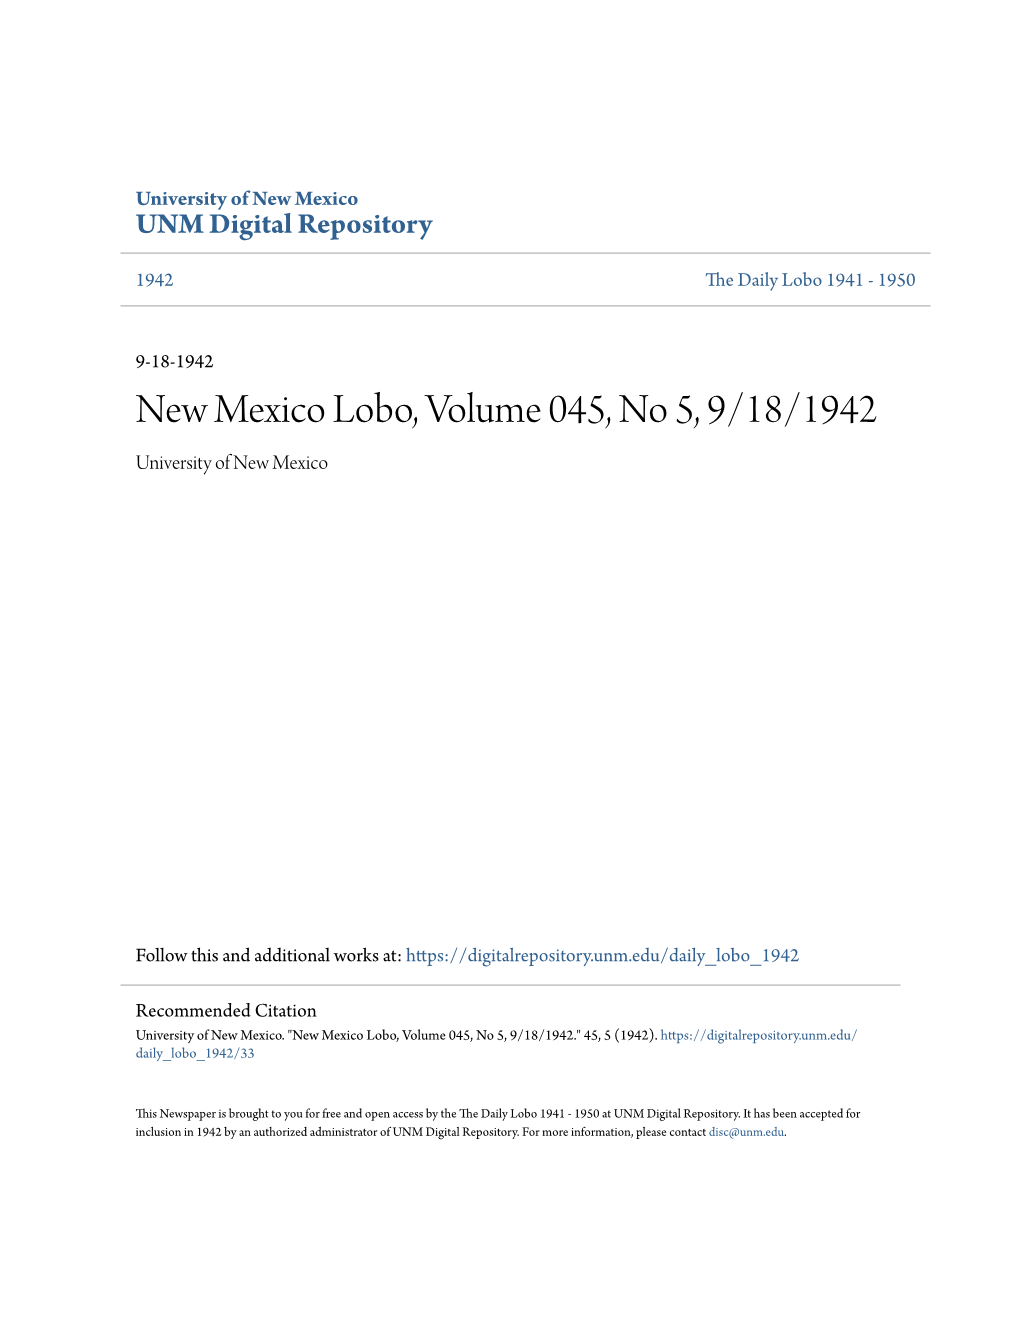 New Mexico Lobo, Volume 045, No 5, 9/18/1942 University of New Mexico